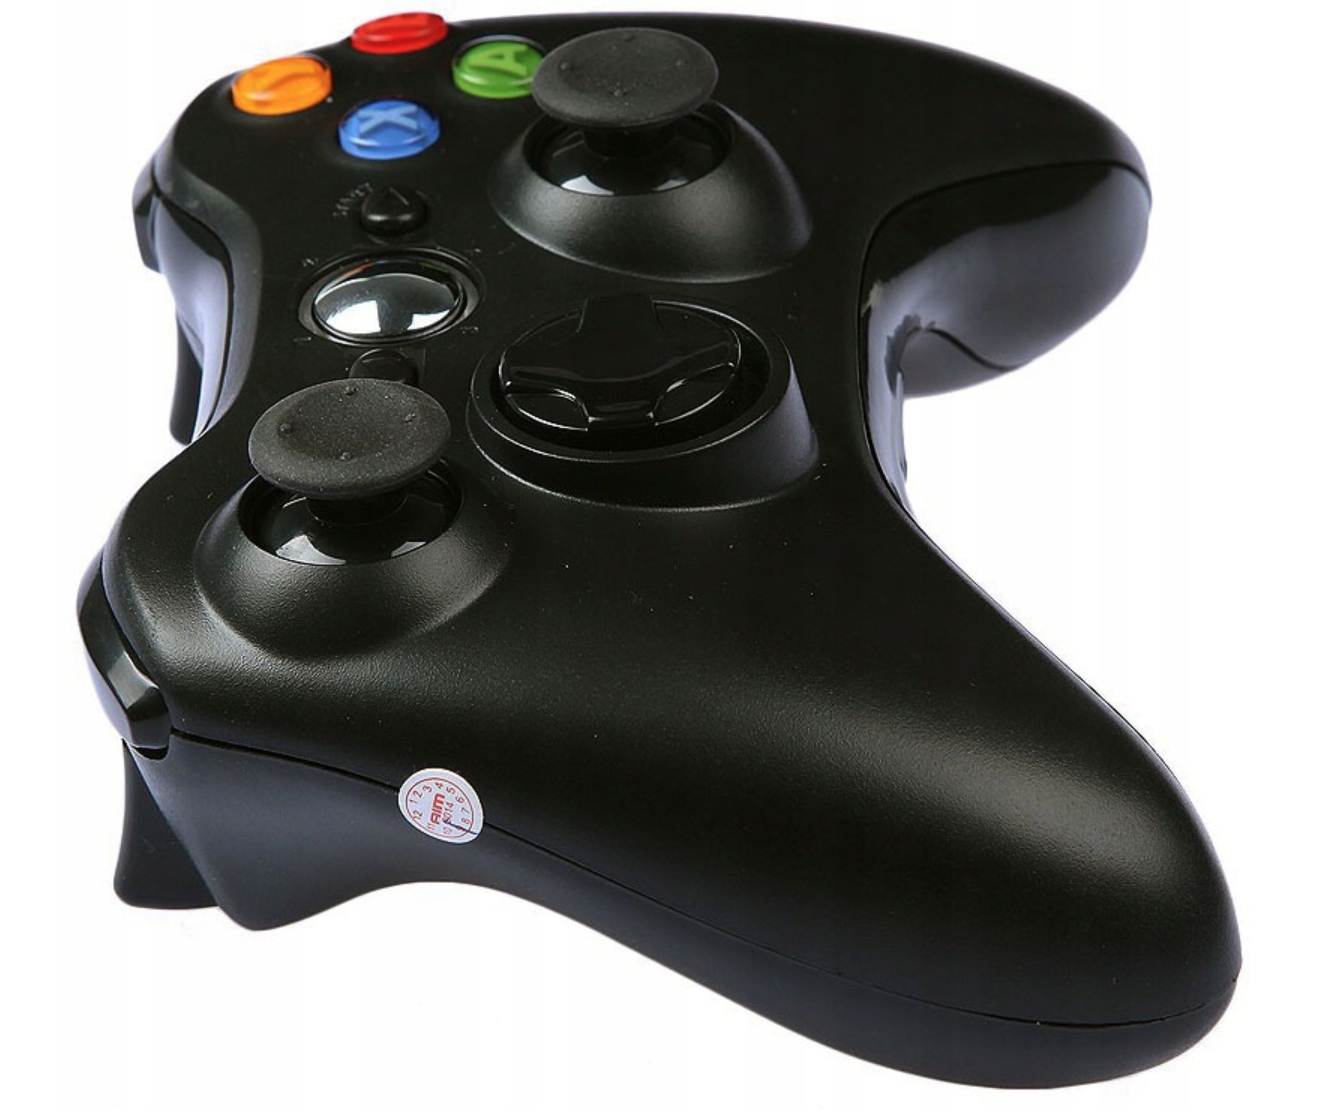 Купить джойстик для xbox 360. Джойстик Xbox 360. Геймпад Xbox 360 Controller. Джойстик Xbox 360 беспроводной. Геймпад для Xbox 360 (черный).